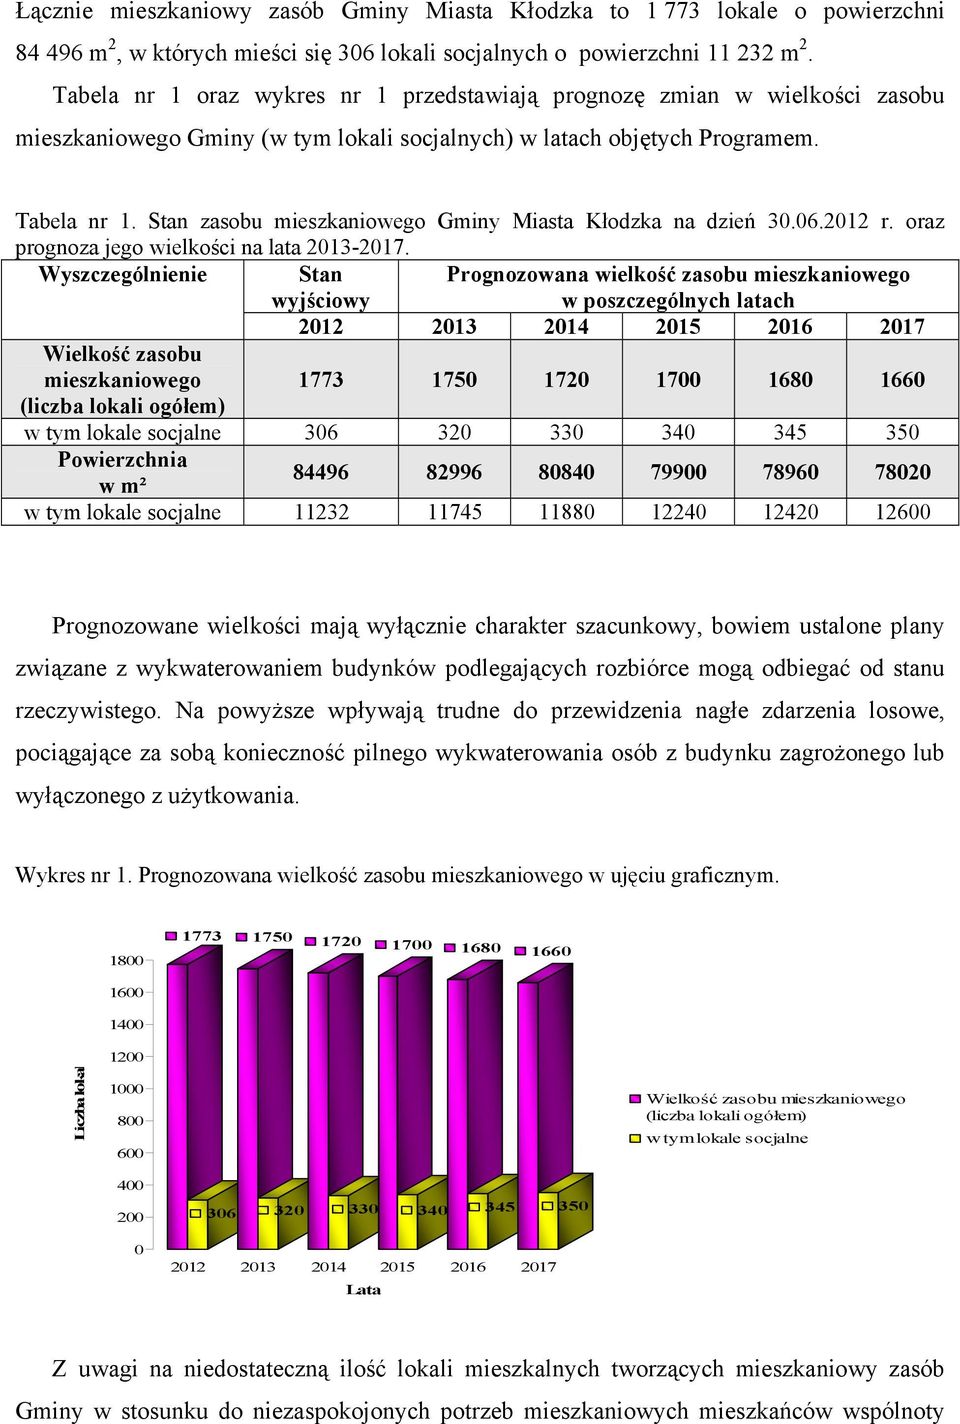 Stan zasobu mieszkaniowego Gminy Miasta Kłodzka na dzień 30.06.2012 r. oraz prognoza jego wielkości na lata 2013-2017.